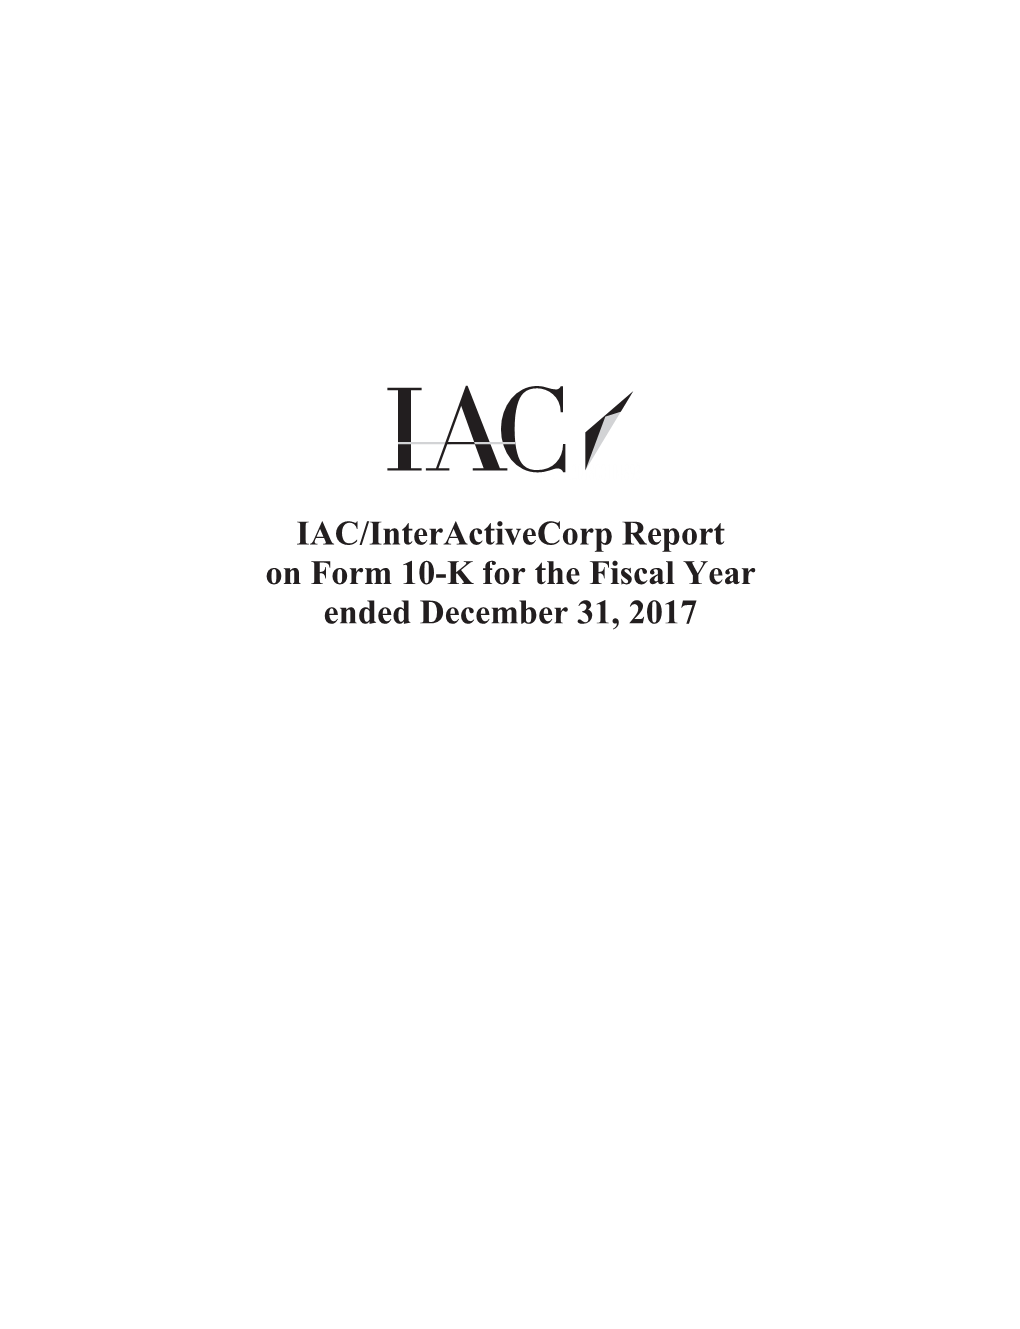 IAC/Interactivecorp Annual Report